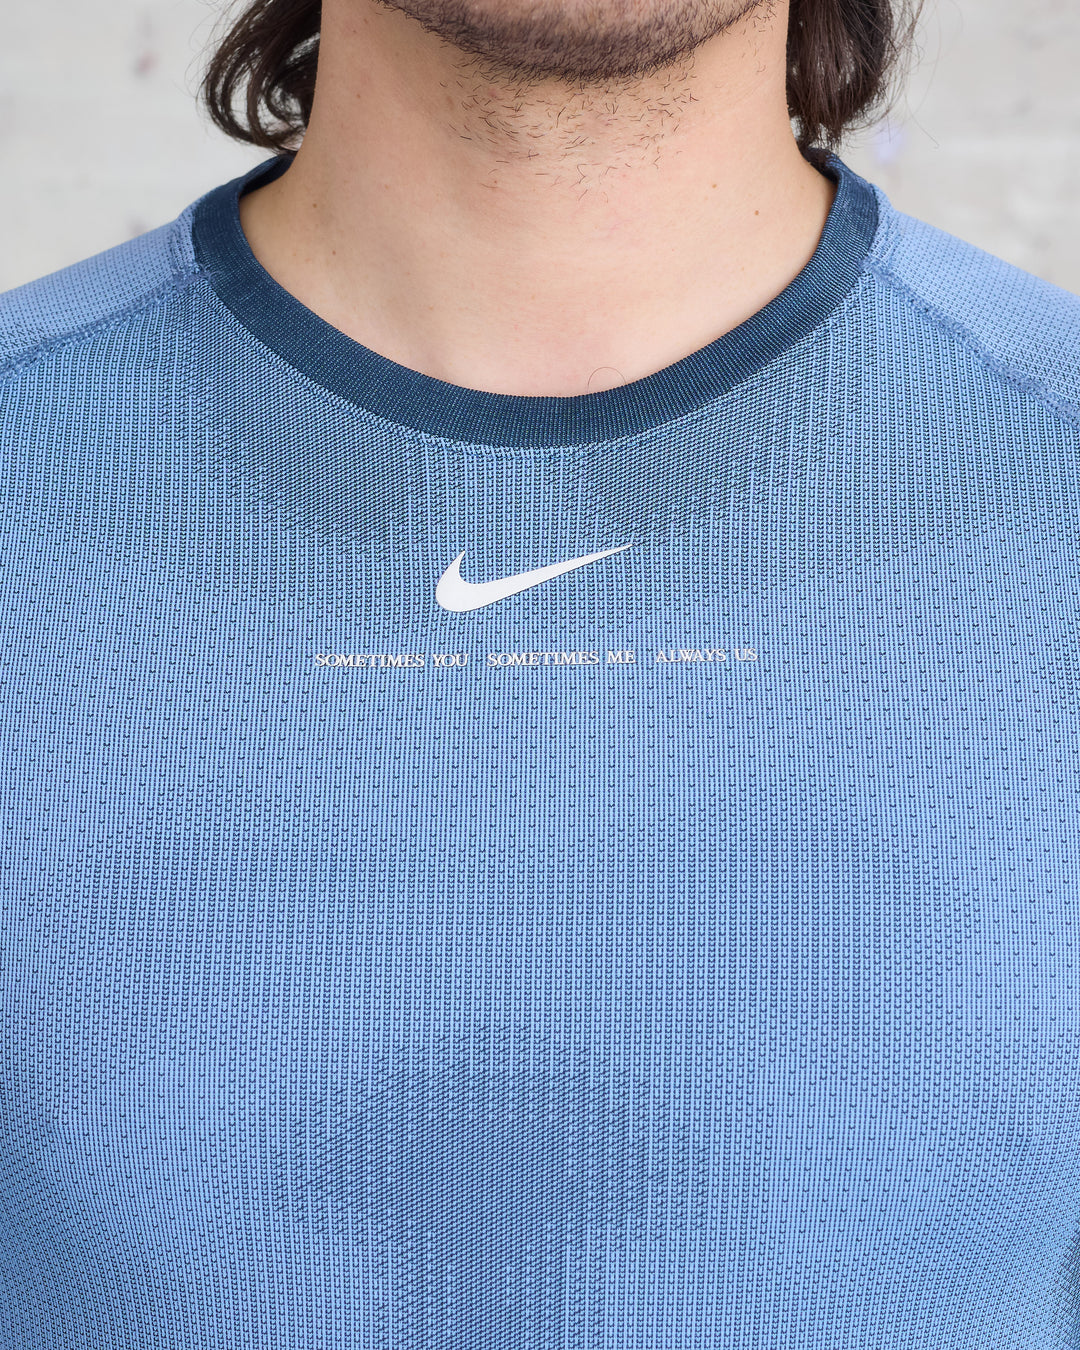 Nike Elite Shirt Women Size Large Long Sleeve Dri-fit Blue Legacy on Sleeve